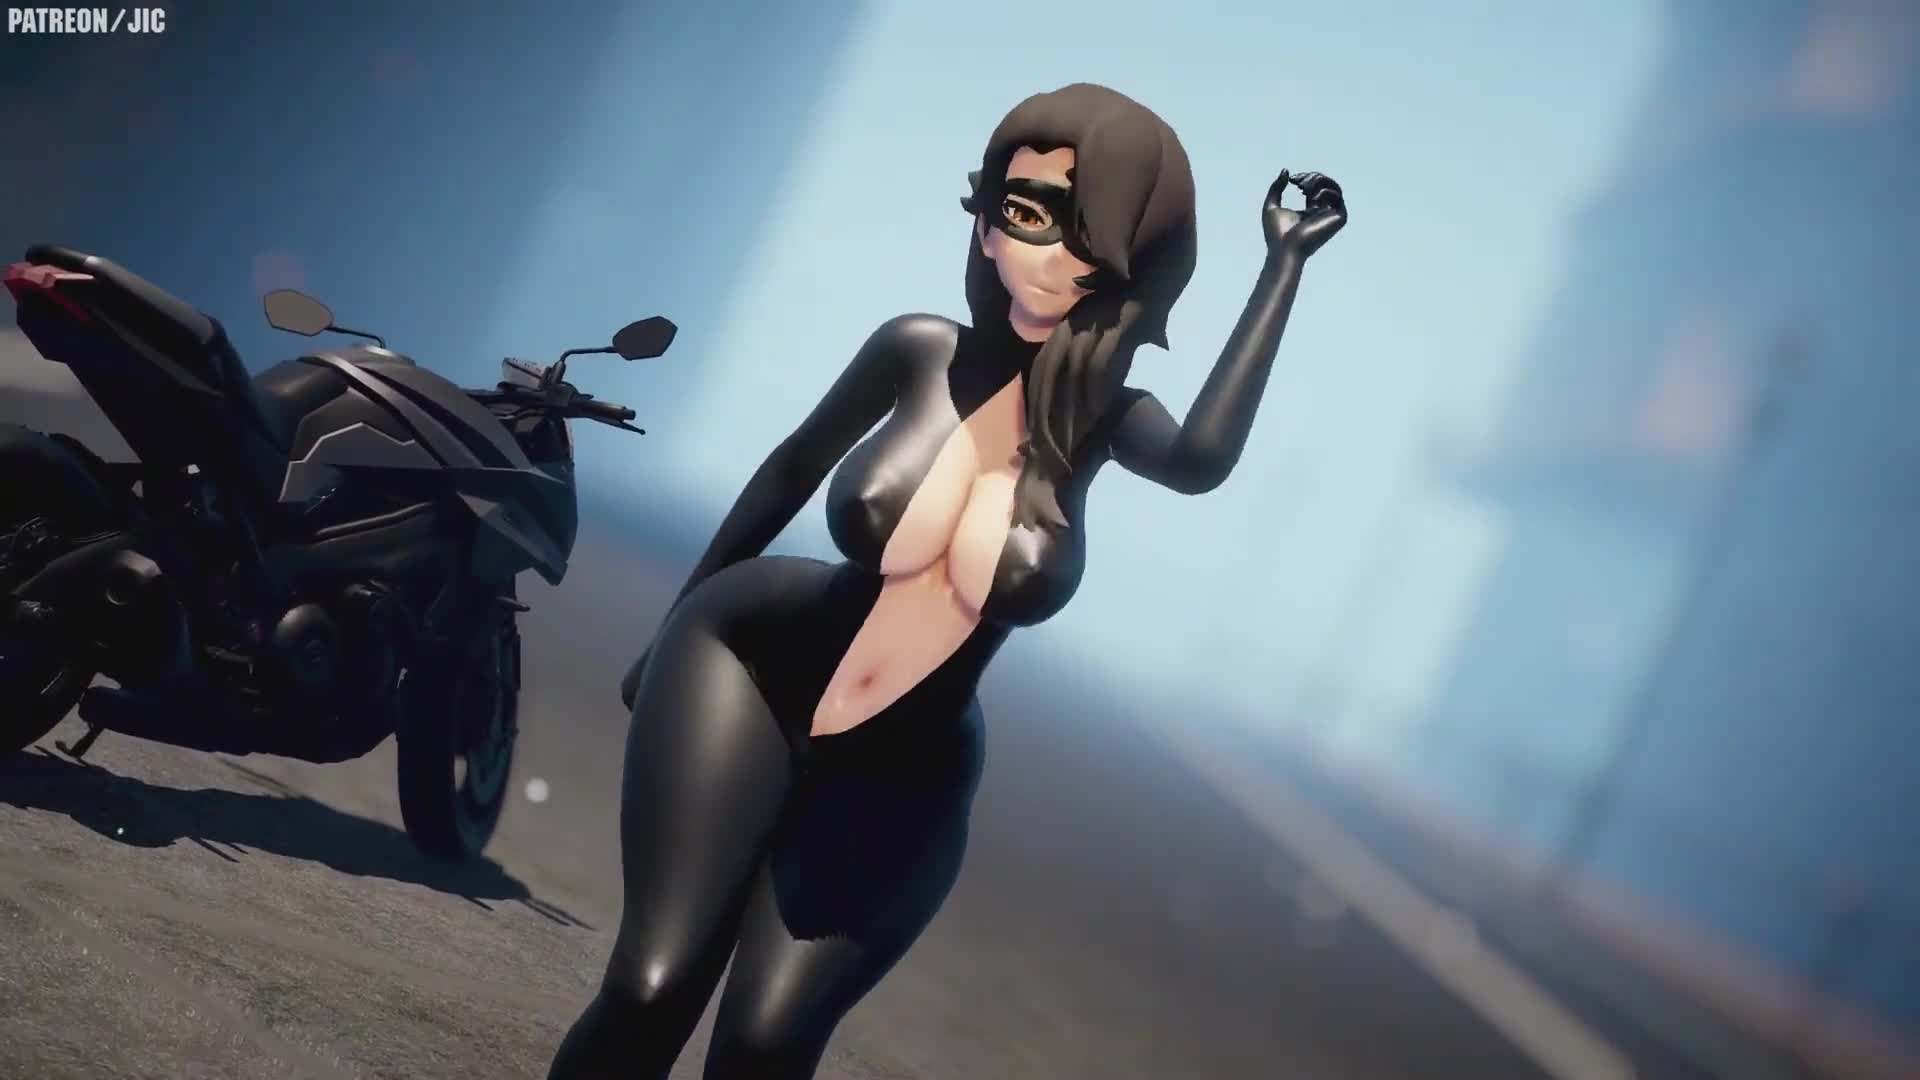 Rwby Cinder Porn - Rwby Cinder Fall Ass Focus Animated - Lewd.ninja